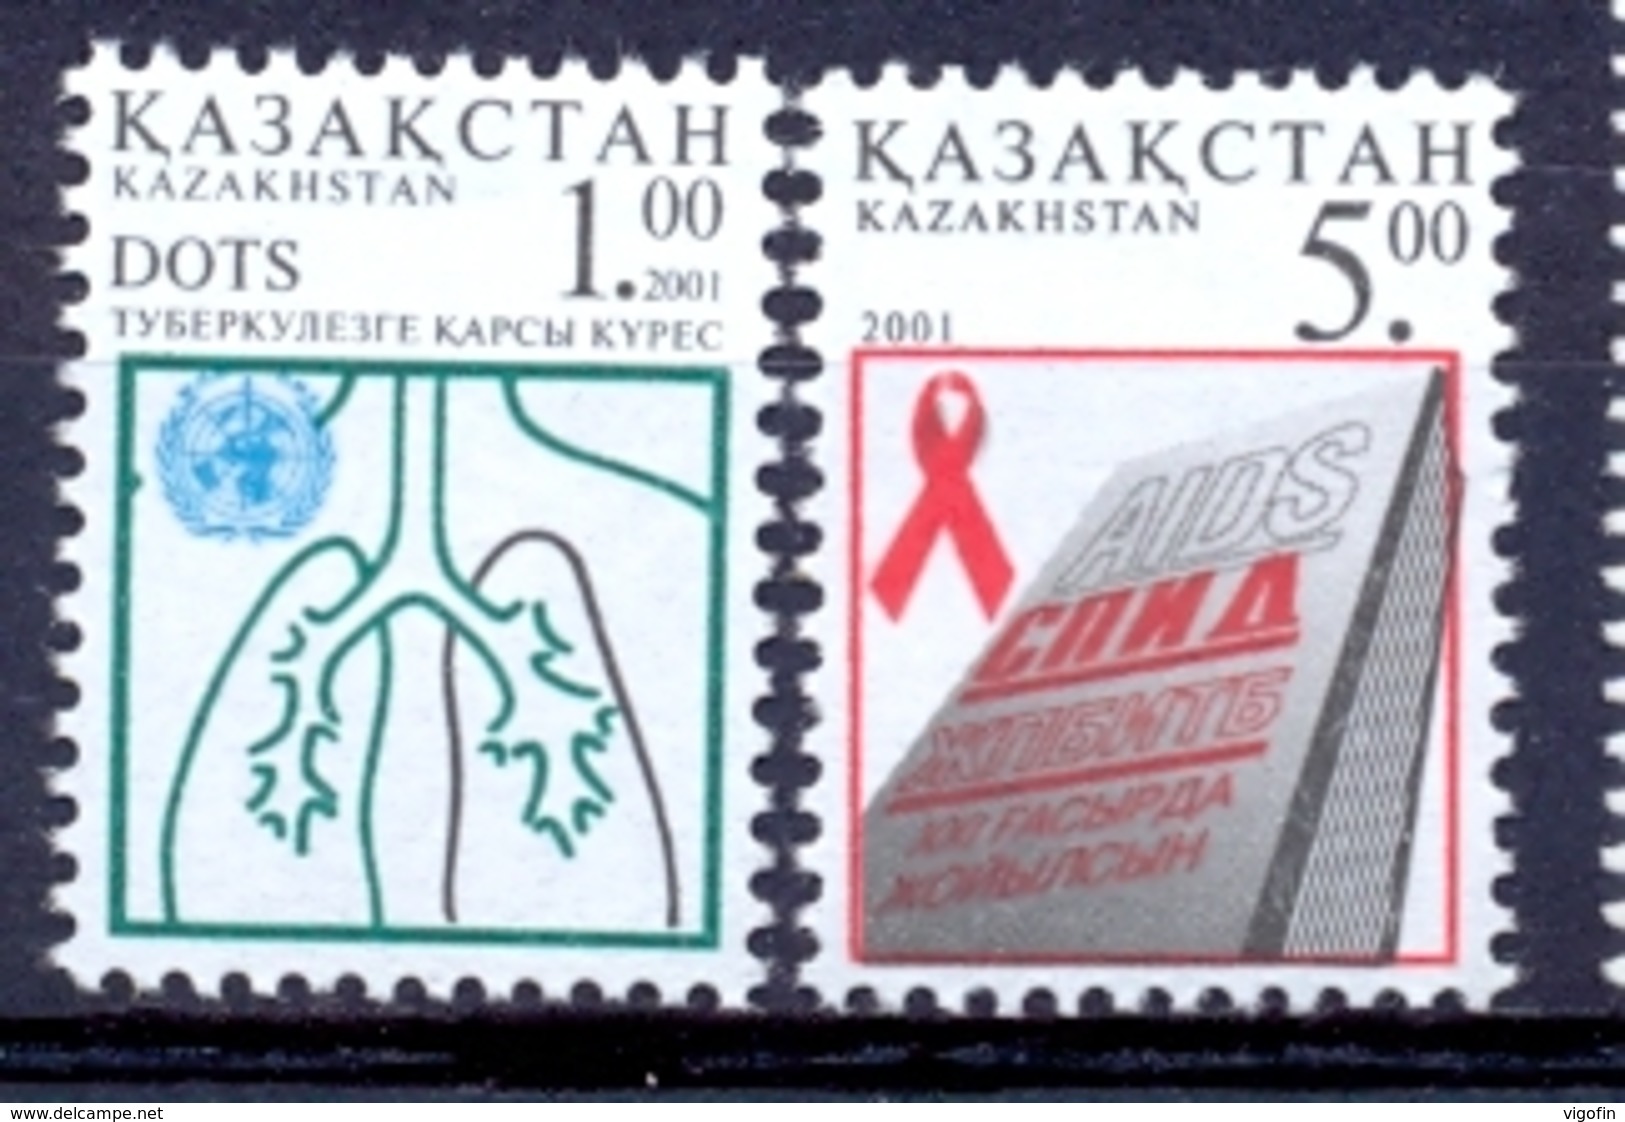 KZ 2001-338-9 Against Aids, KAZAKISTAN, 1 X 2v, MNH - Kazakistan